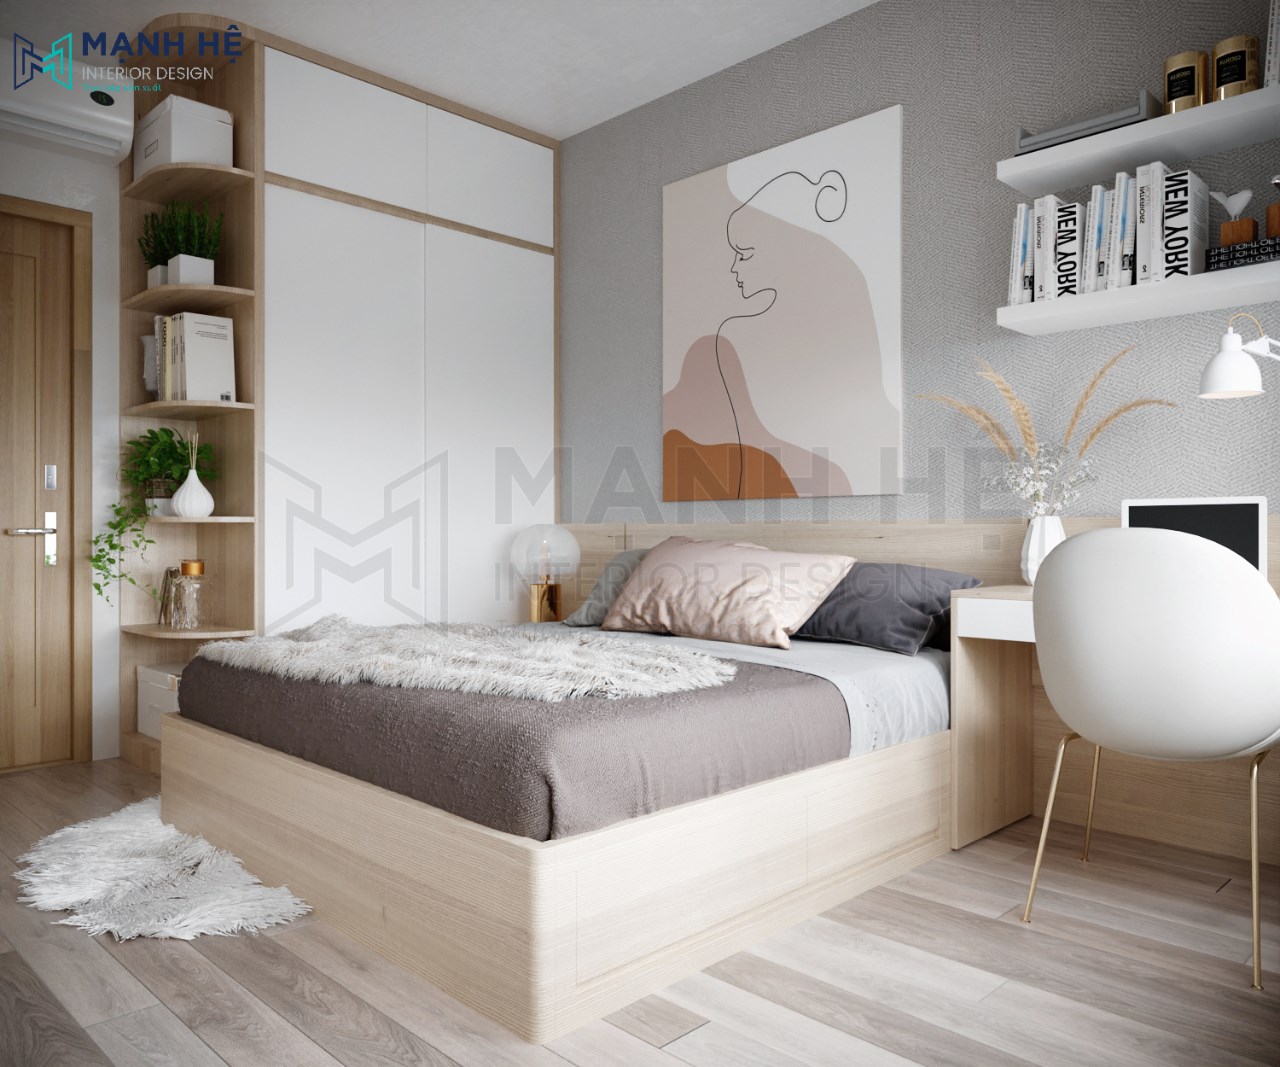 35 Mẫu thiết kế nội thất phòng ngủ đẹp hiện đại  sang trọng